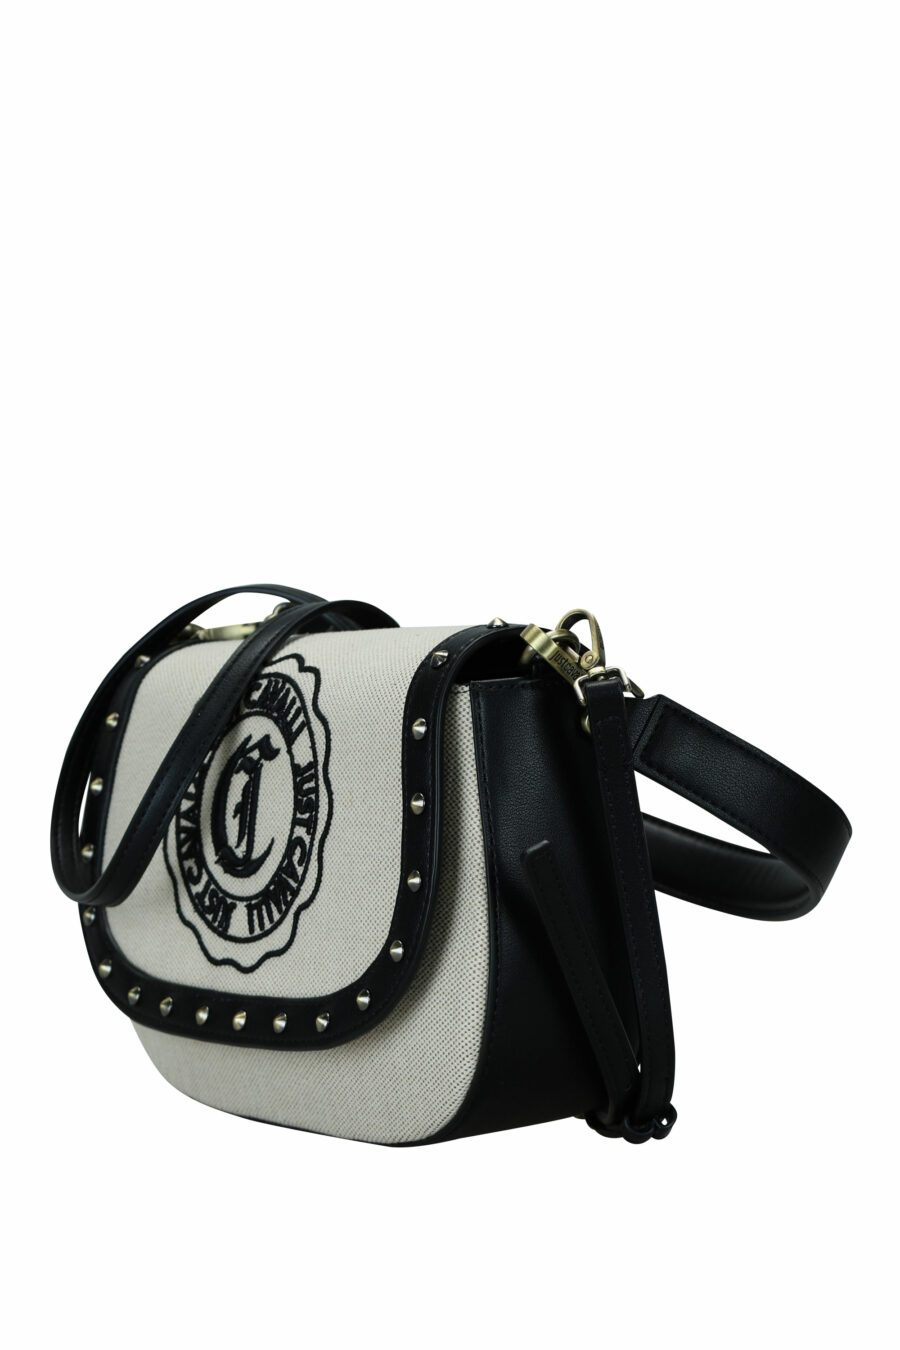 Bolso bandolera negro con solapa y logo circular "c" - 8052672642462 1